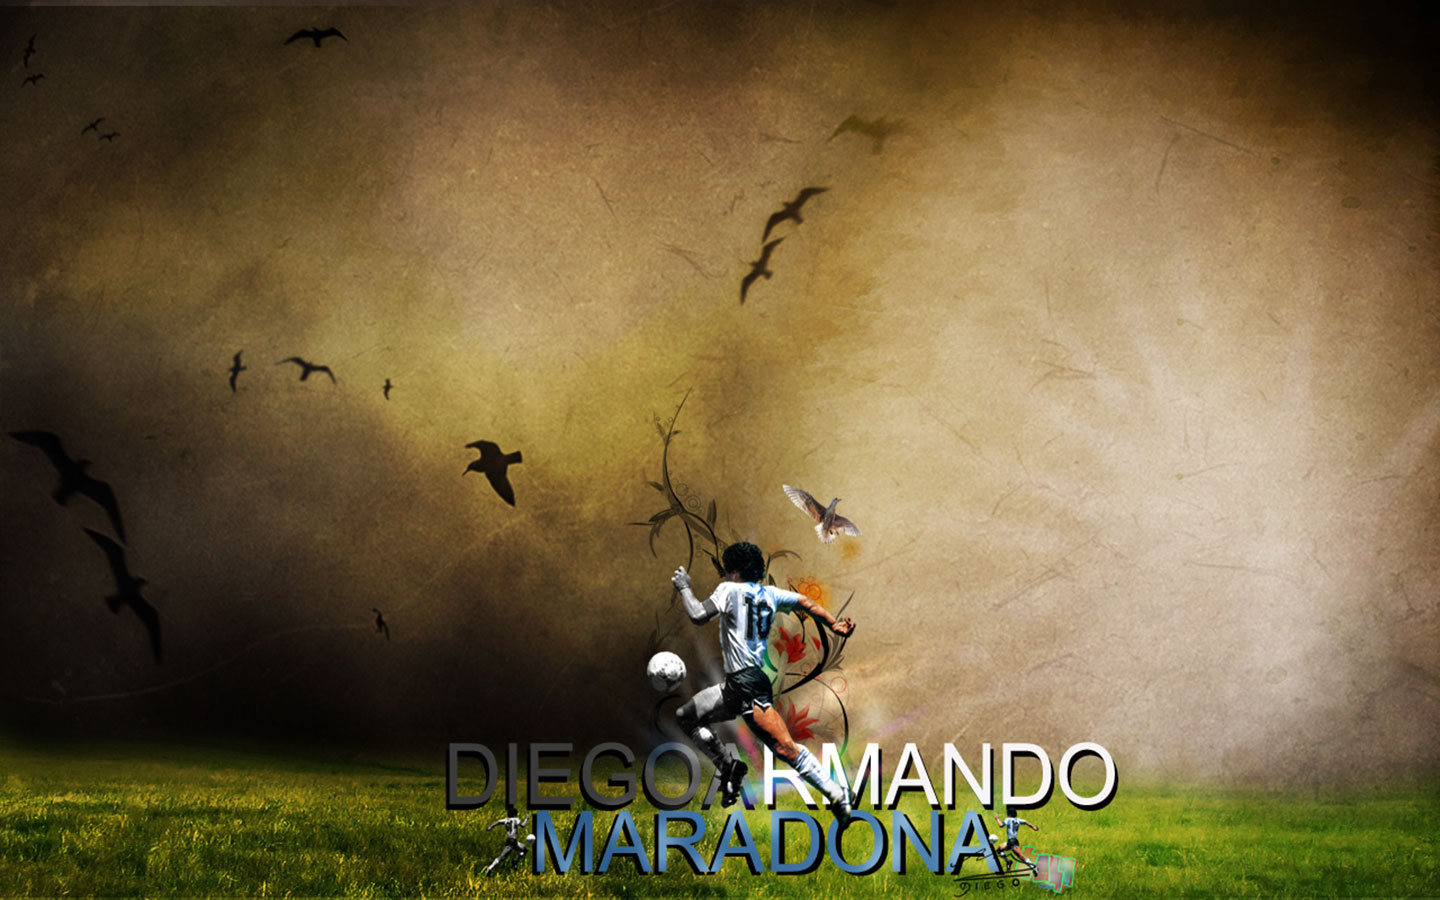 Популярні заставки і фони Дієго Армандо Марадона на комп'ютер